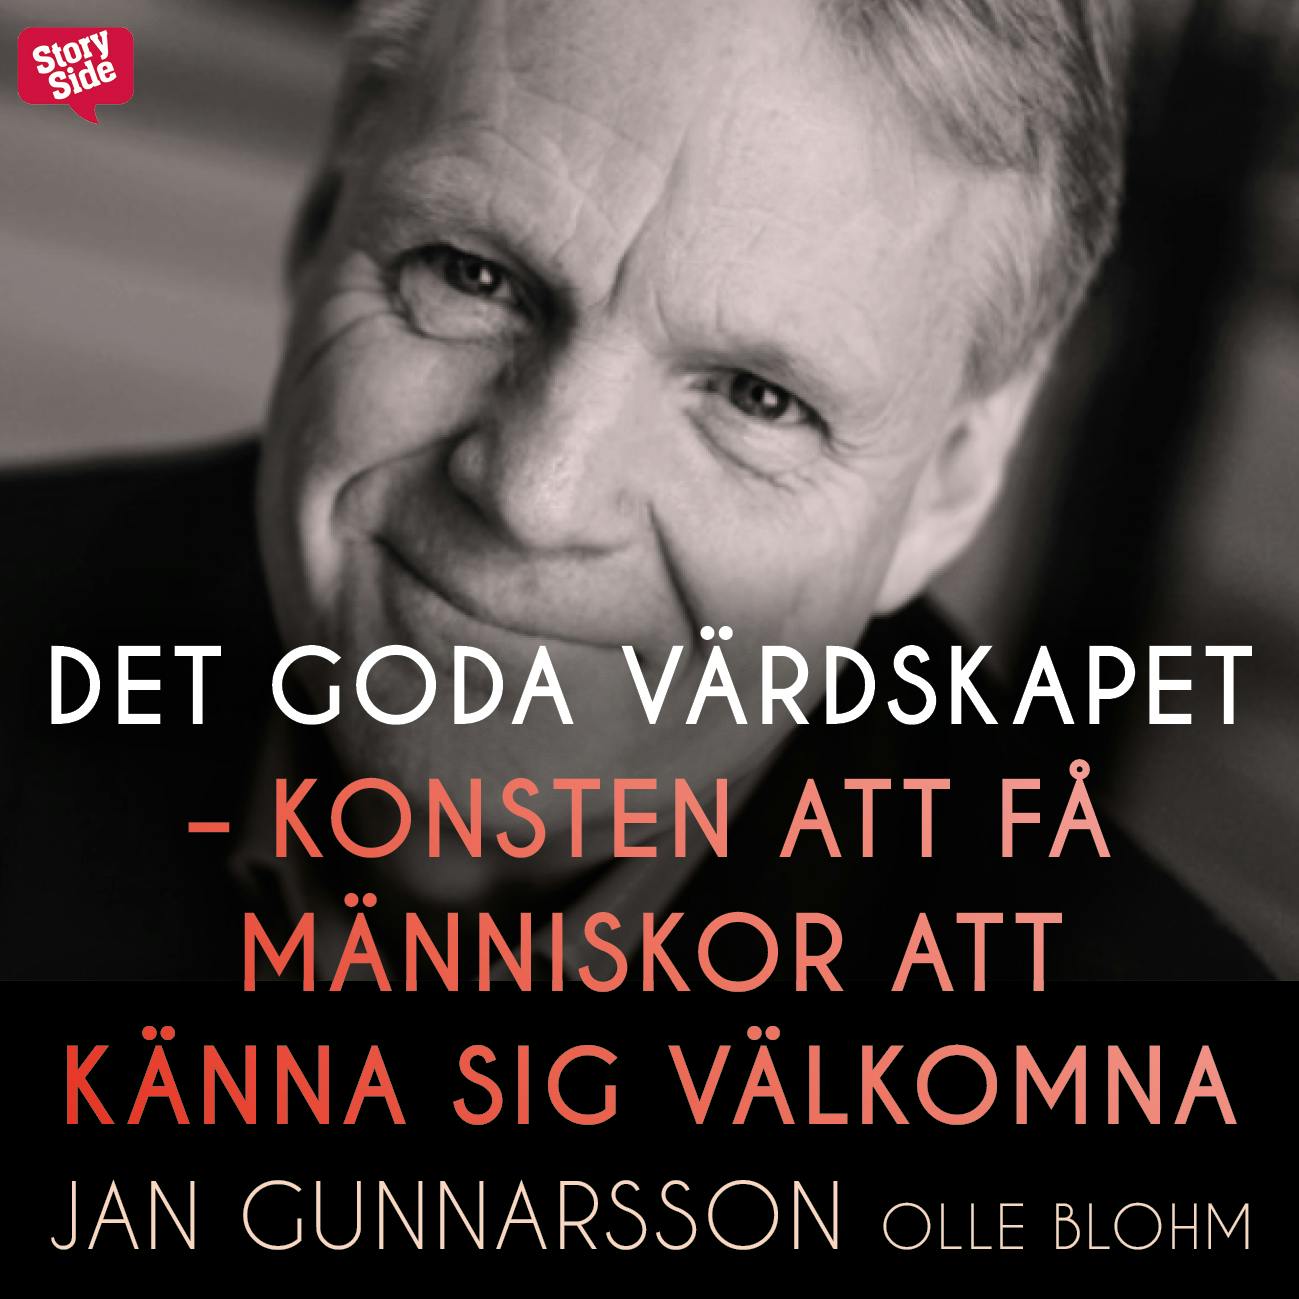 Det goda värdskapet - konsten att få människor att känna sig välkomna - Jan Gunnarsson, Olle Blohm